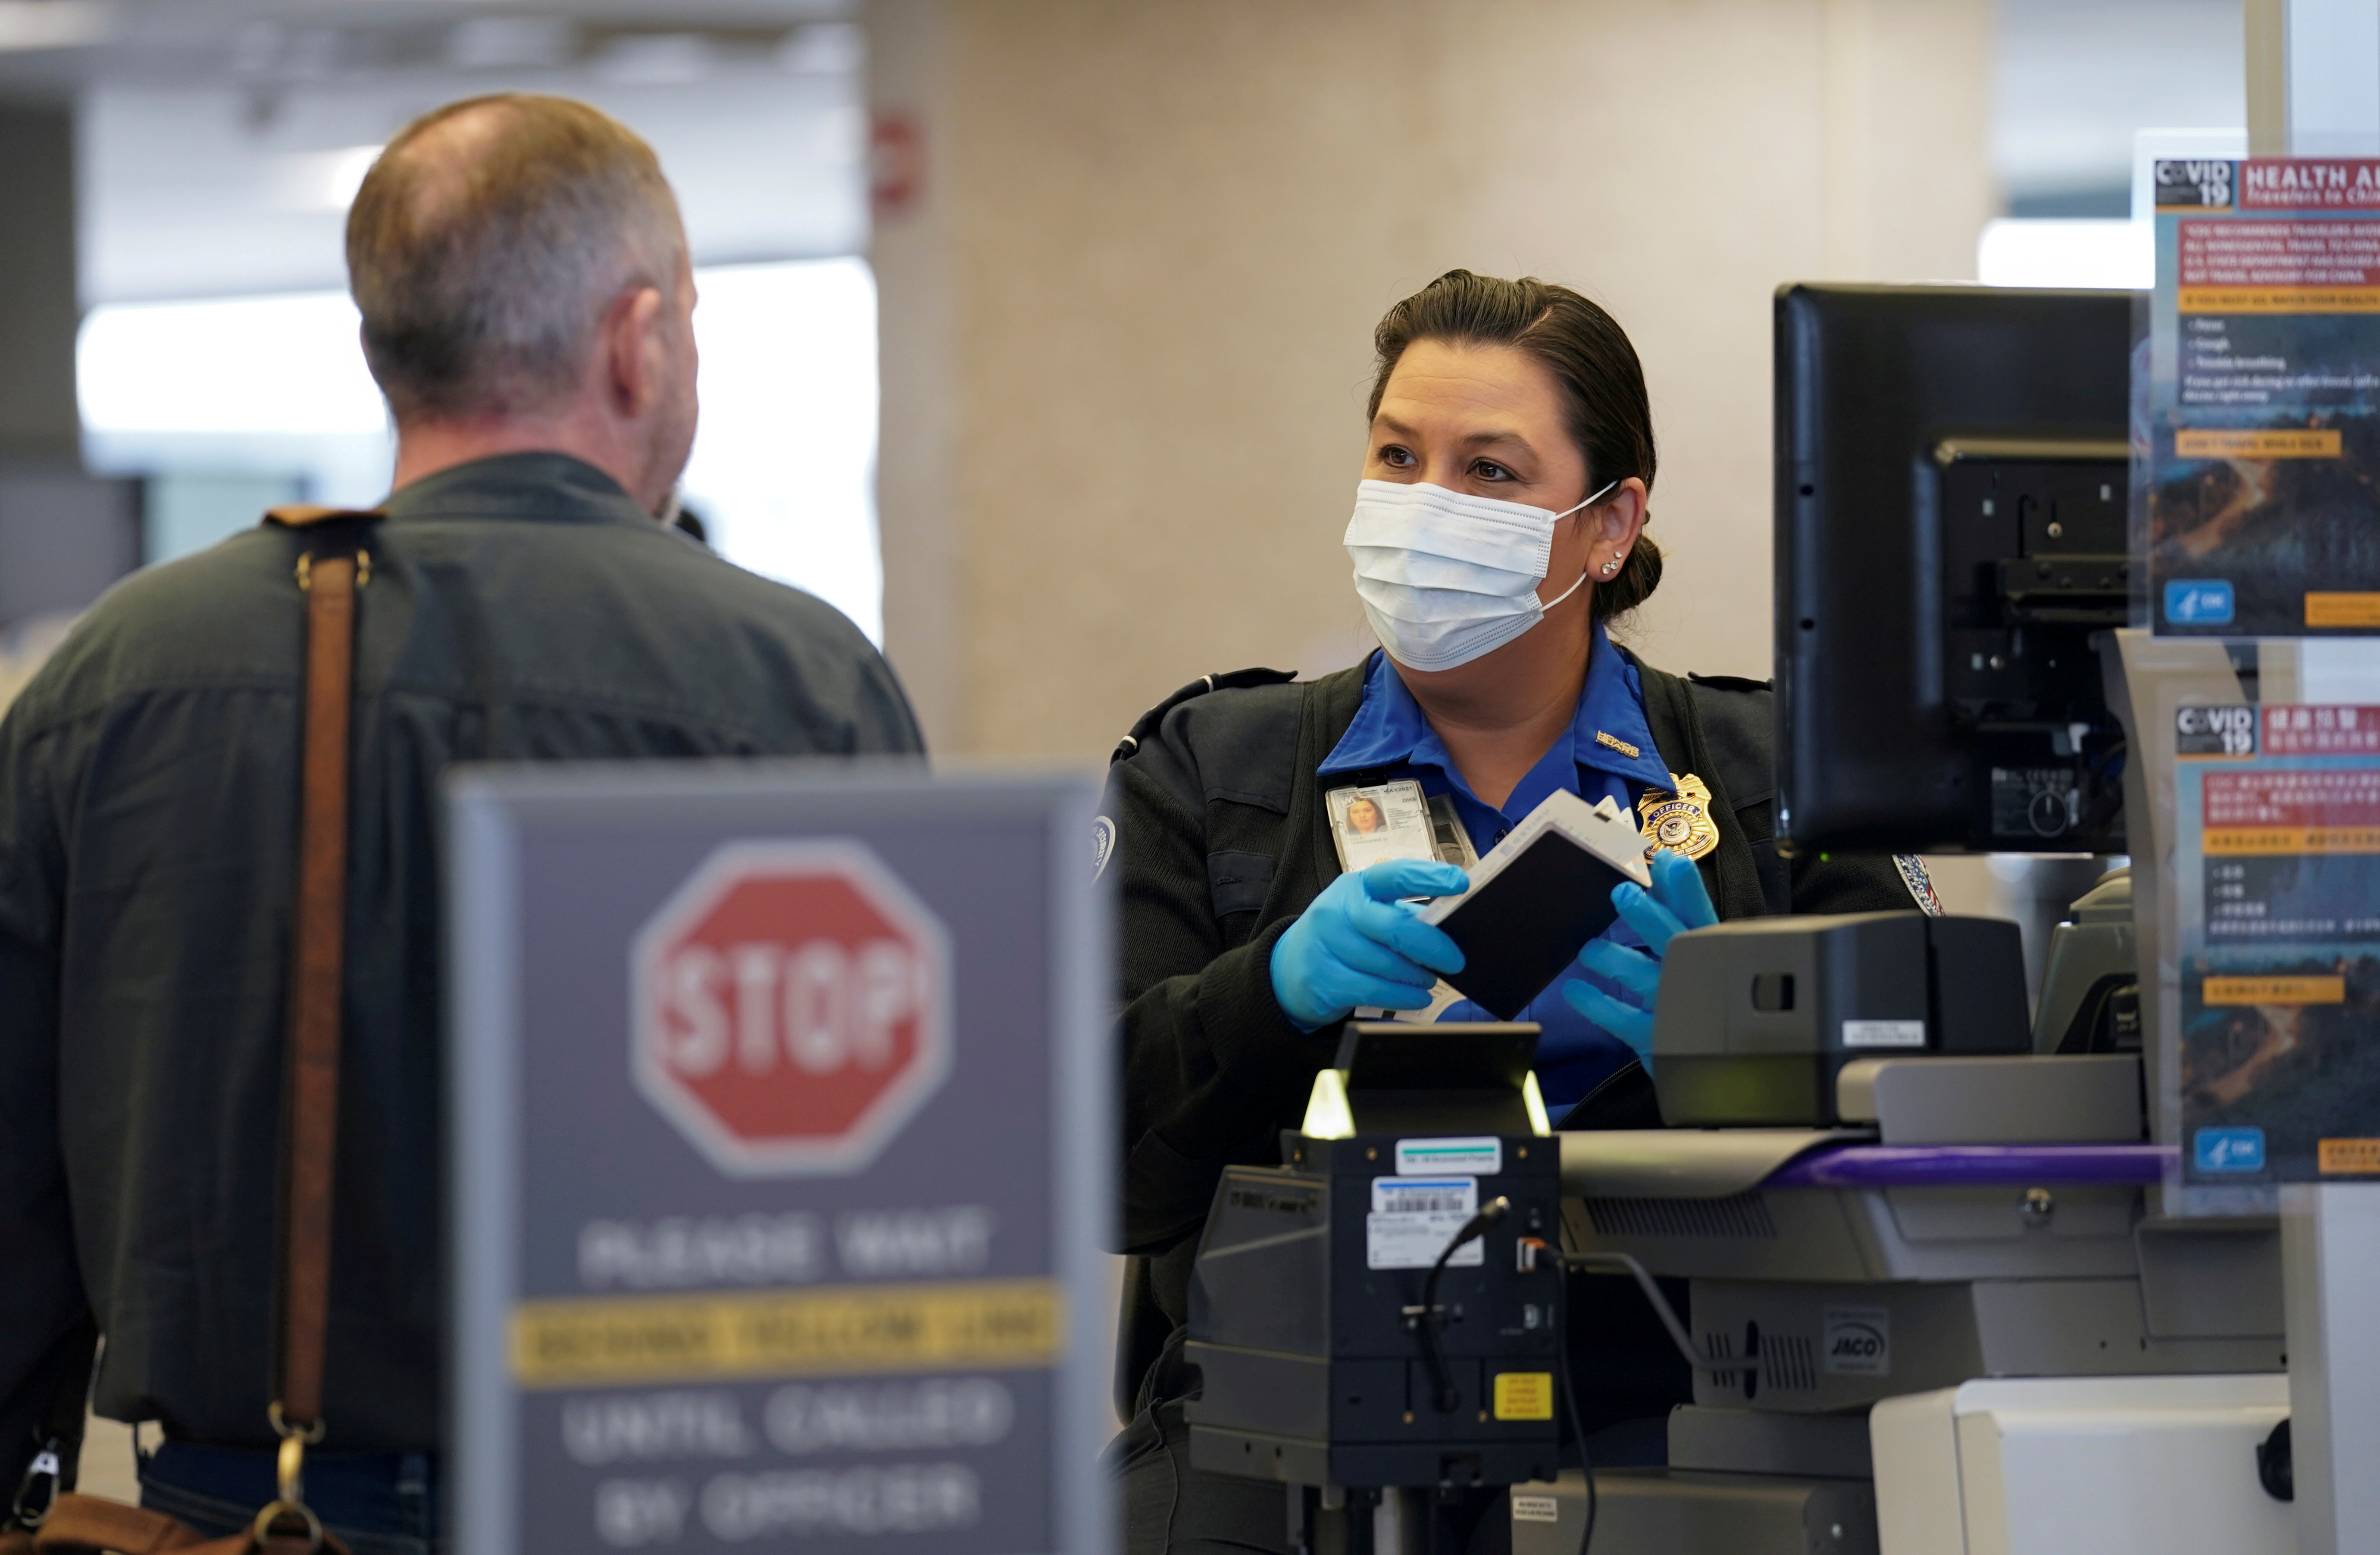 Los ataques terroristas obligaron a las autoridades estadounidenses a intensificar los controles a los pasajeros. REUTERS/Kevin Lamarque/File Photo